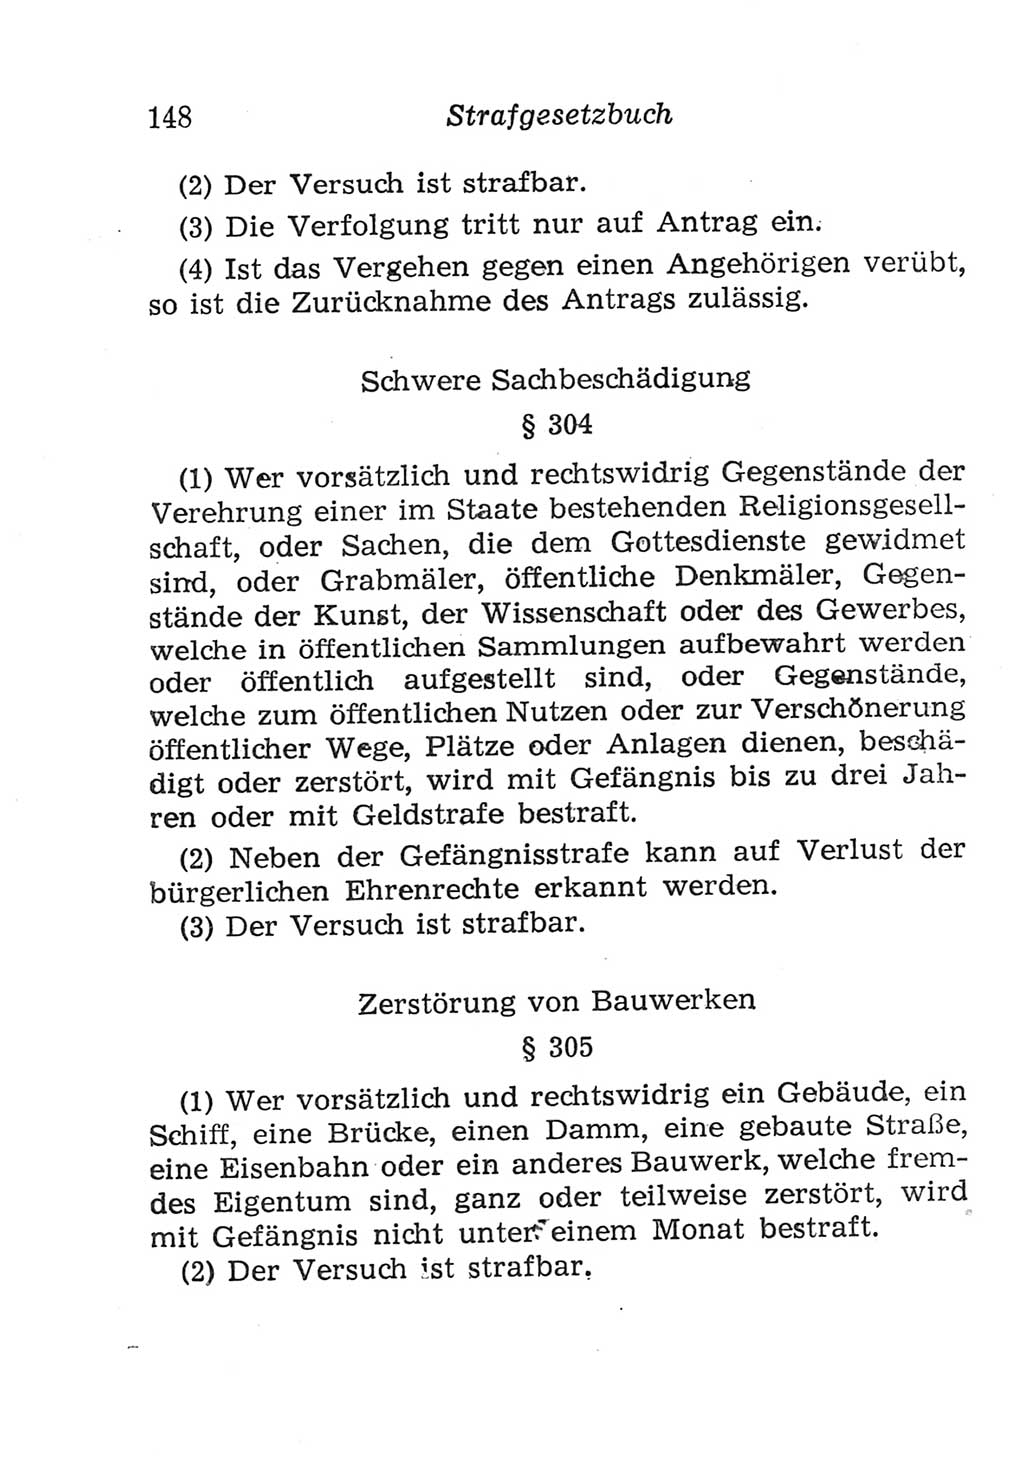 Strafgesetzbuch (StGB) und andere Strafgesetze [Deutsche Demokratische Republik (DDR)] 1957, Seite 148 (StGB Strafges. DDR 1957, S. 148)